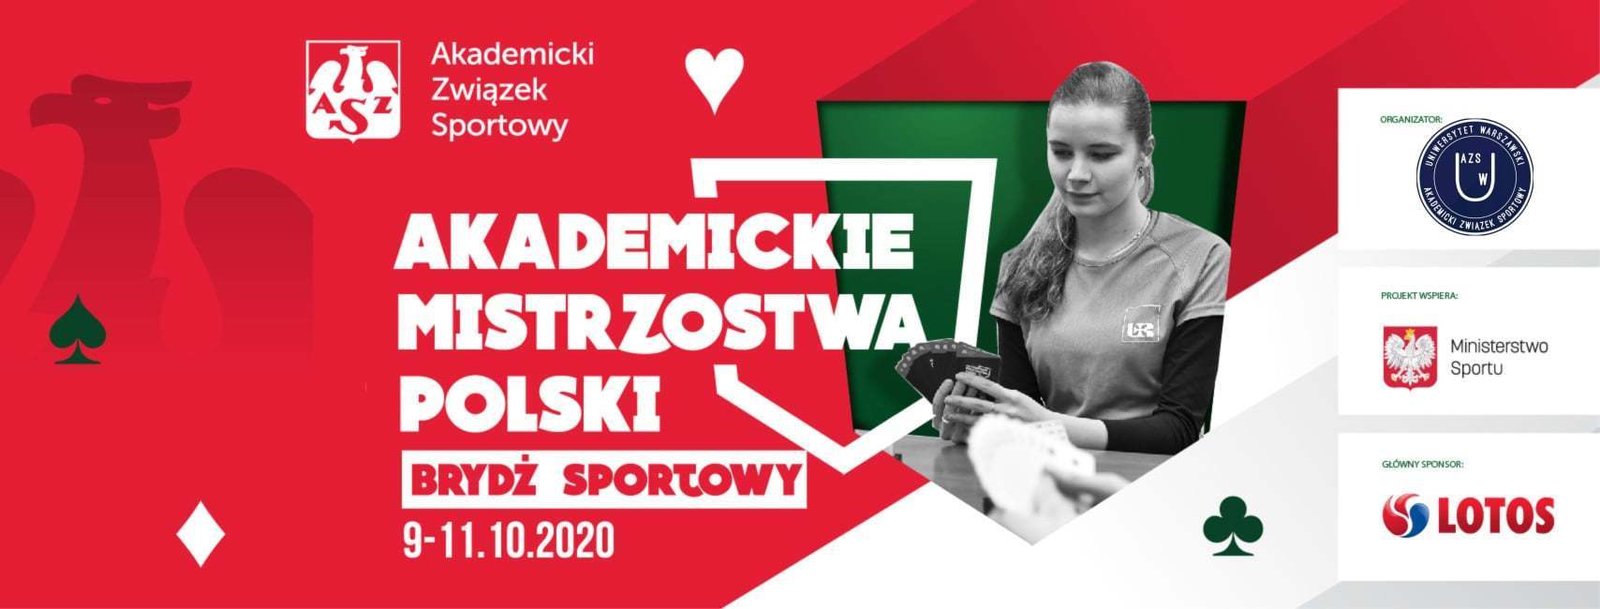 Akademickie Mistrzostwa Polski w Brydżu Sportowym (9-11.10.2020)